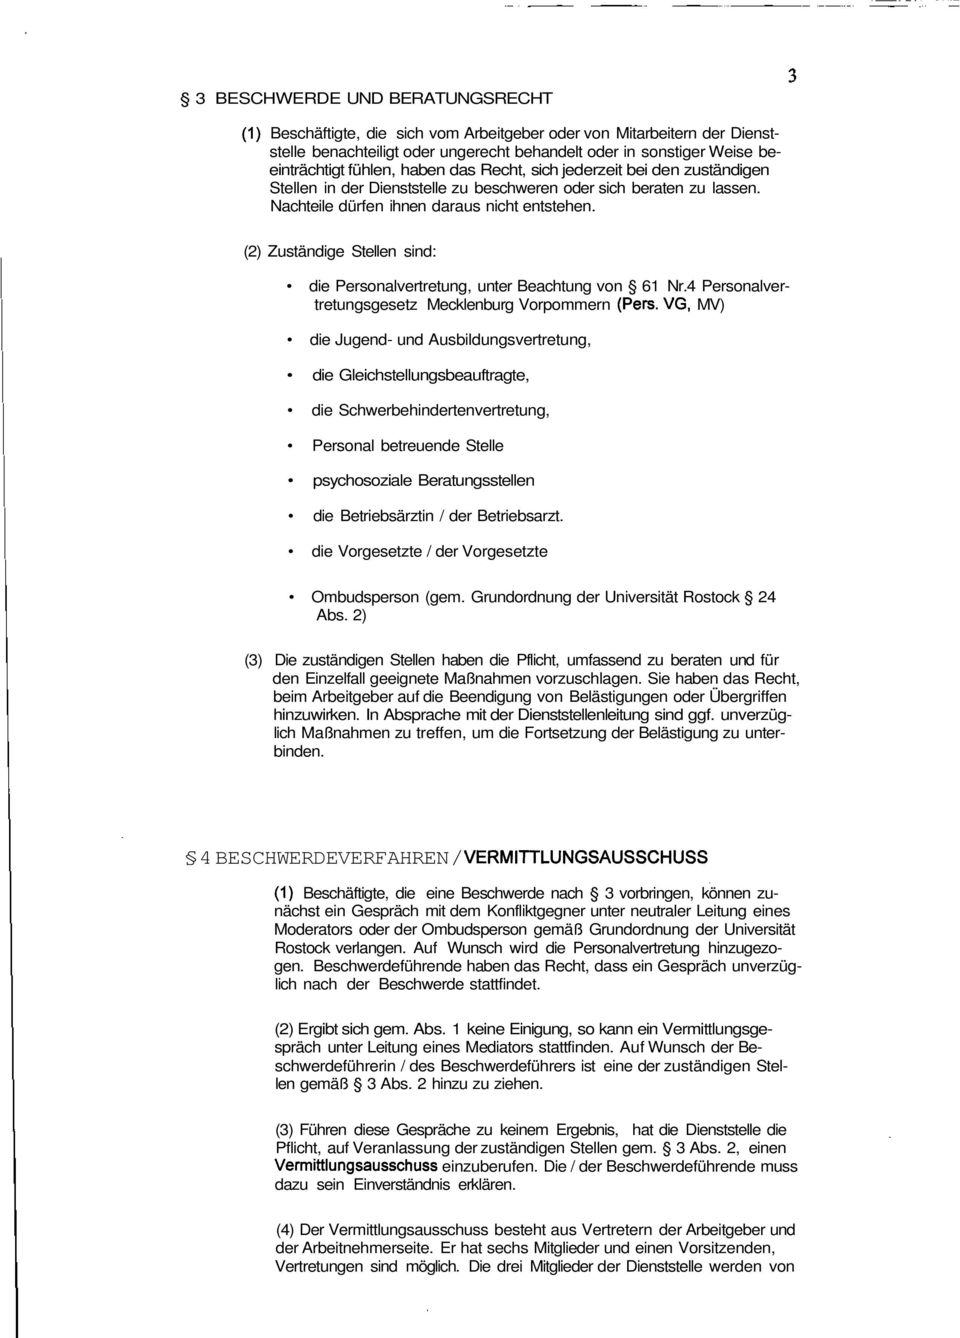 (2) Zuständige Stellen sind: die Personalvertretung, unter Beachtung von 61 Nr.4 Personalvertretungsgesetz Mecklenburg Vorpommern (Pers.